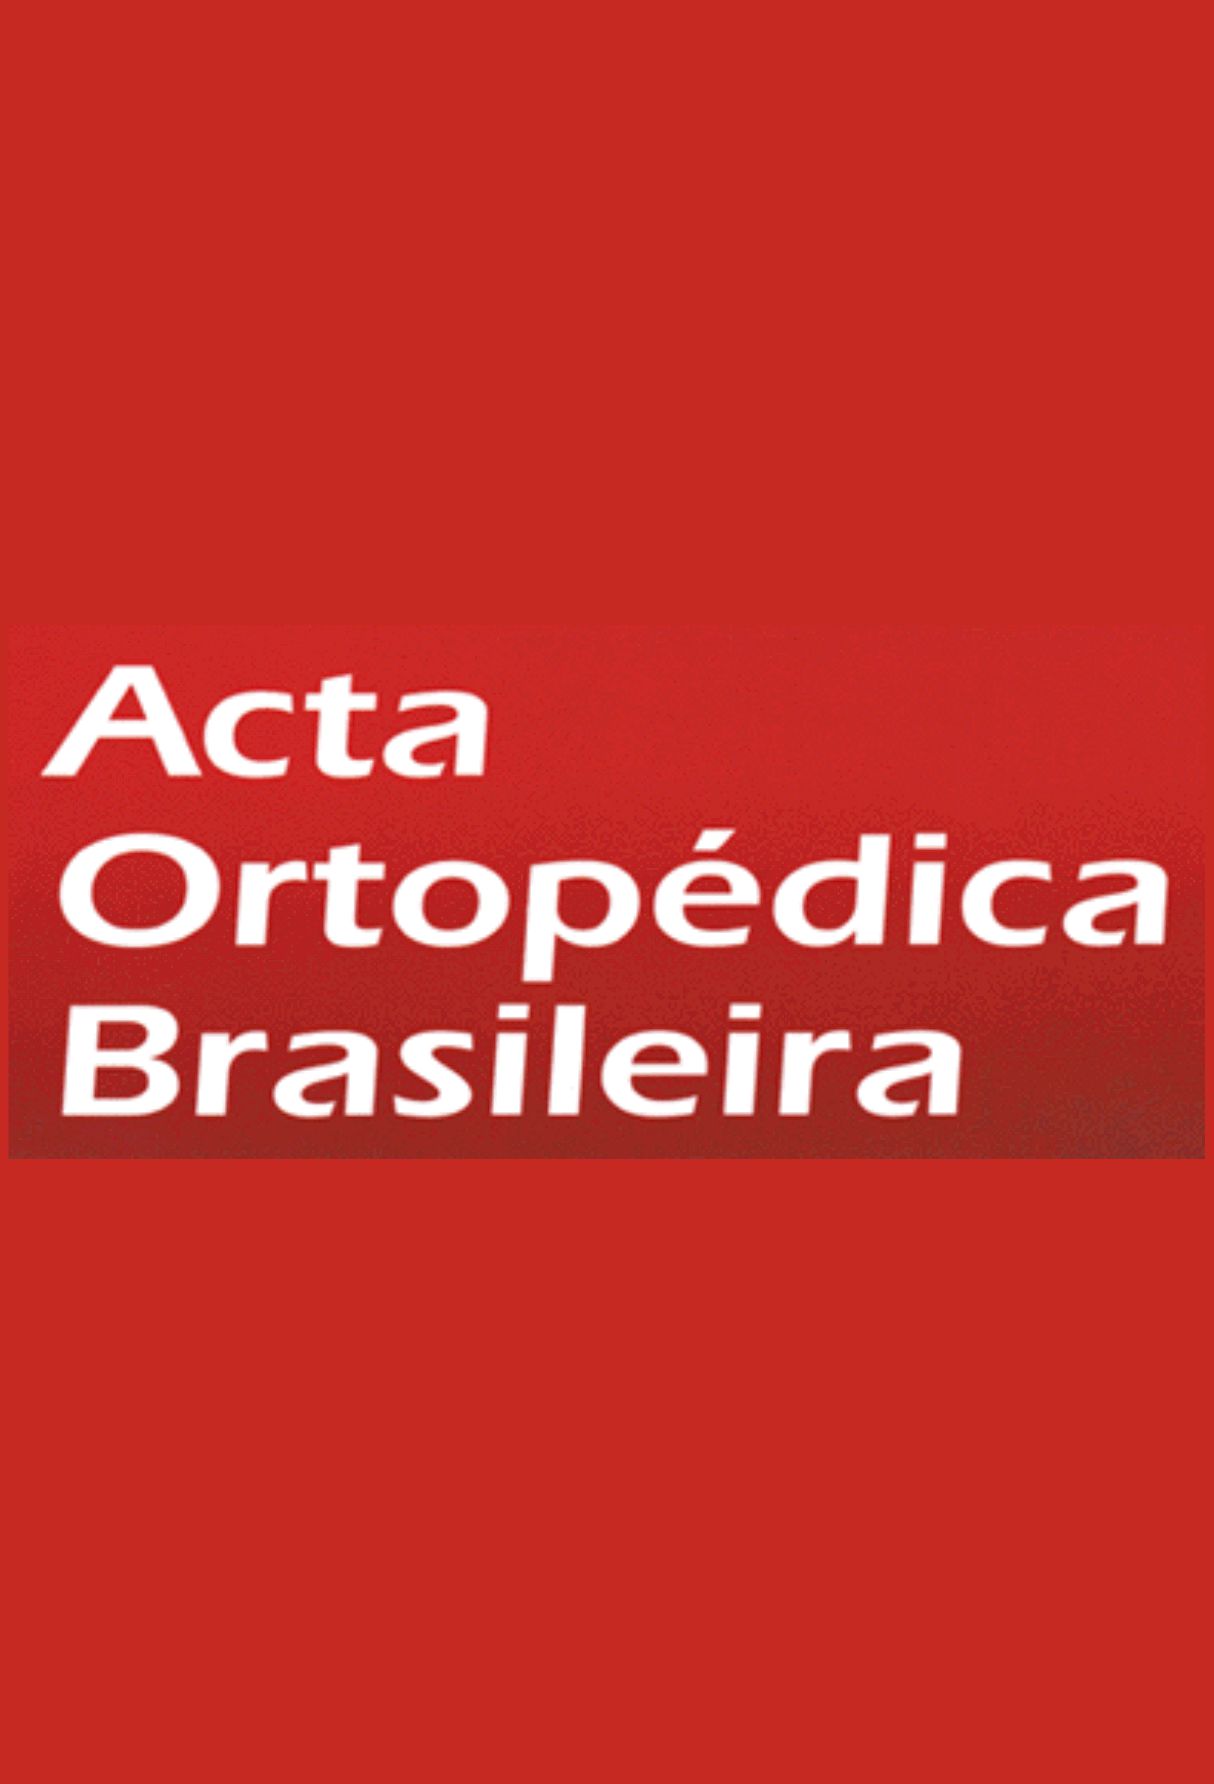 Capa: Acta Ortopédica Brasileira